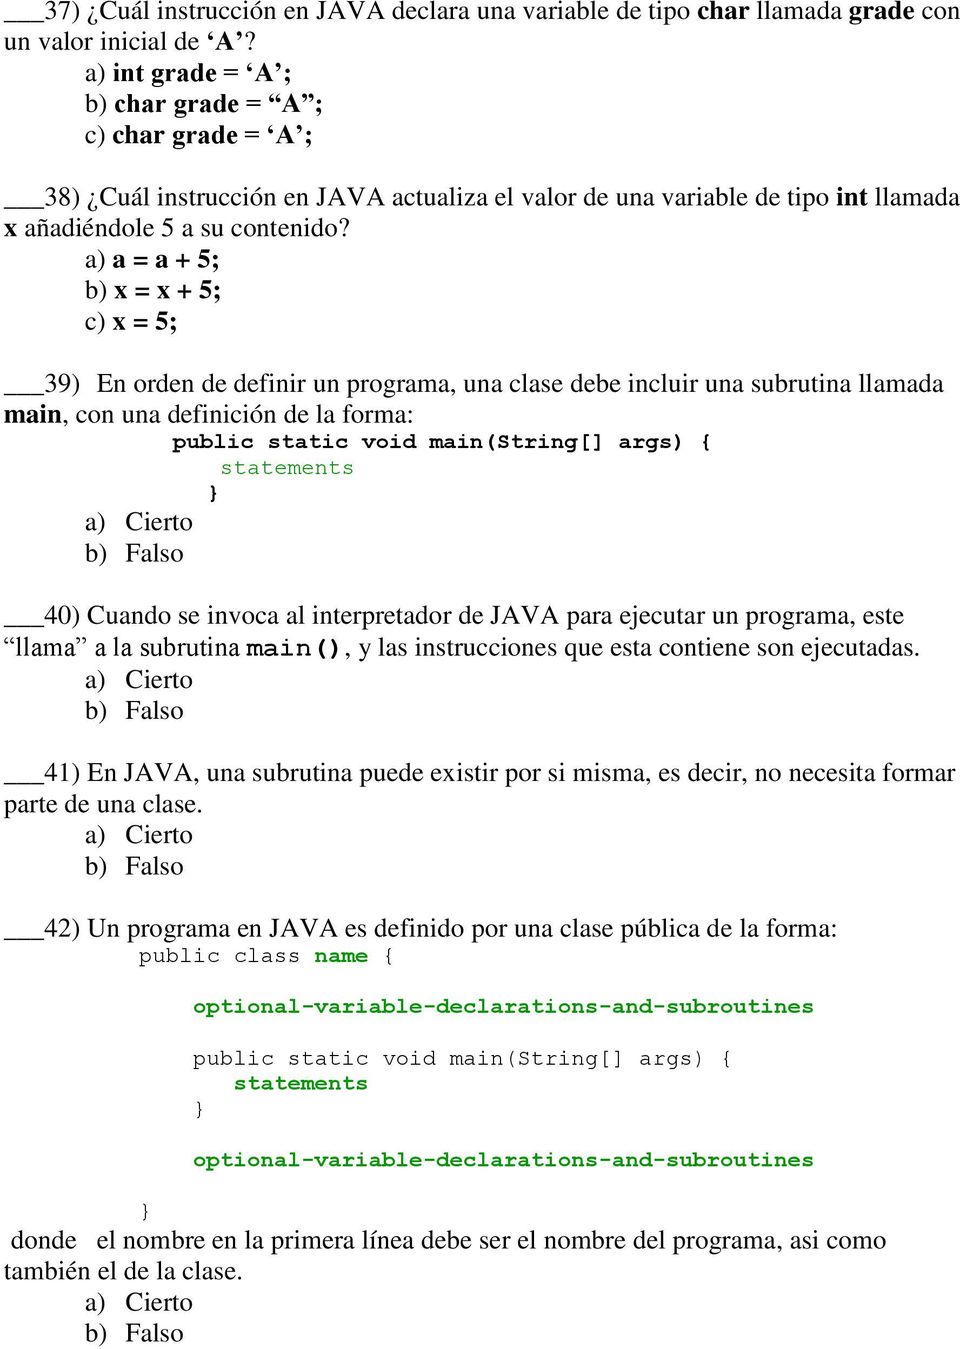 a) a = a + 5; b) x = x + 5; c) x = 5; 39) En orden de definir un programa, una clase debe incluir una subrutina llamada main, con una definición de la forma: statements 40) Cuando se invoca al